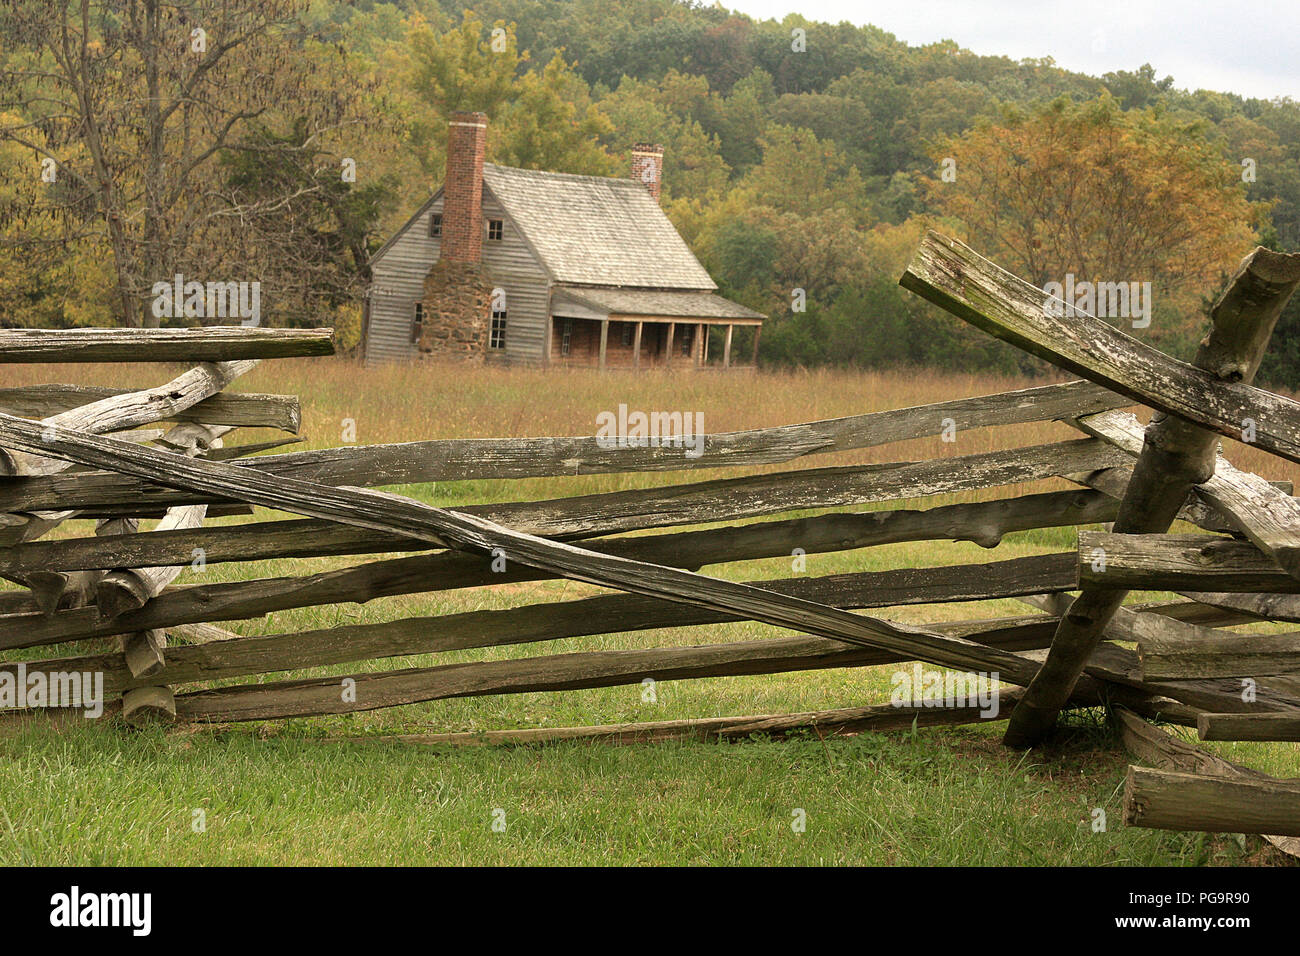 Mariah Wright House, historisches Gebäude in Appomattox, Virginia, erbaut 1823. Gestapelter Holzzaun um das Grundstück herum. Herbstlandschaft. Stockfoto